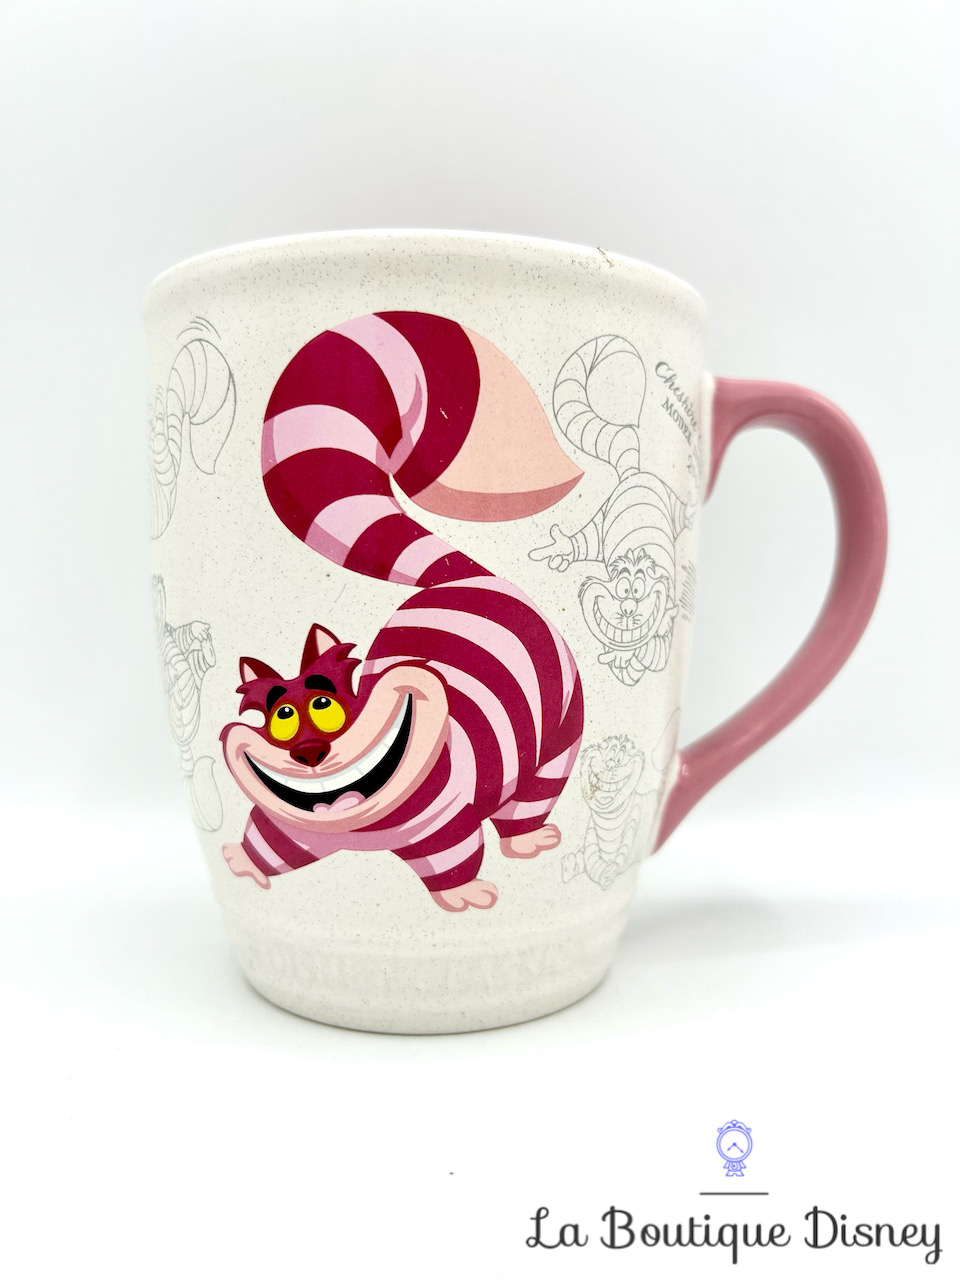 Tasse Chat Cheshire Animé Disney Store 2017 mug Classic Alice au Pays des Merveilles blanc rose dessins